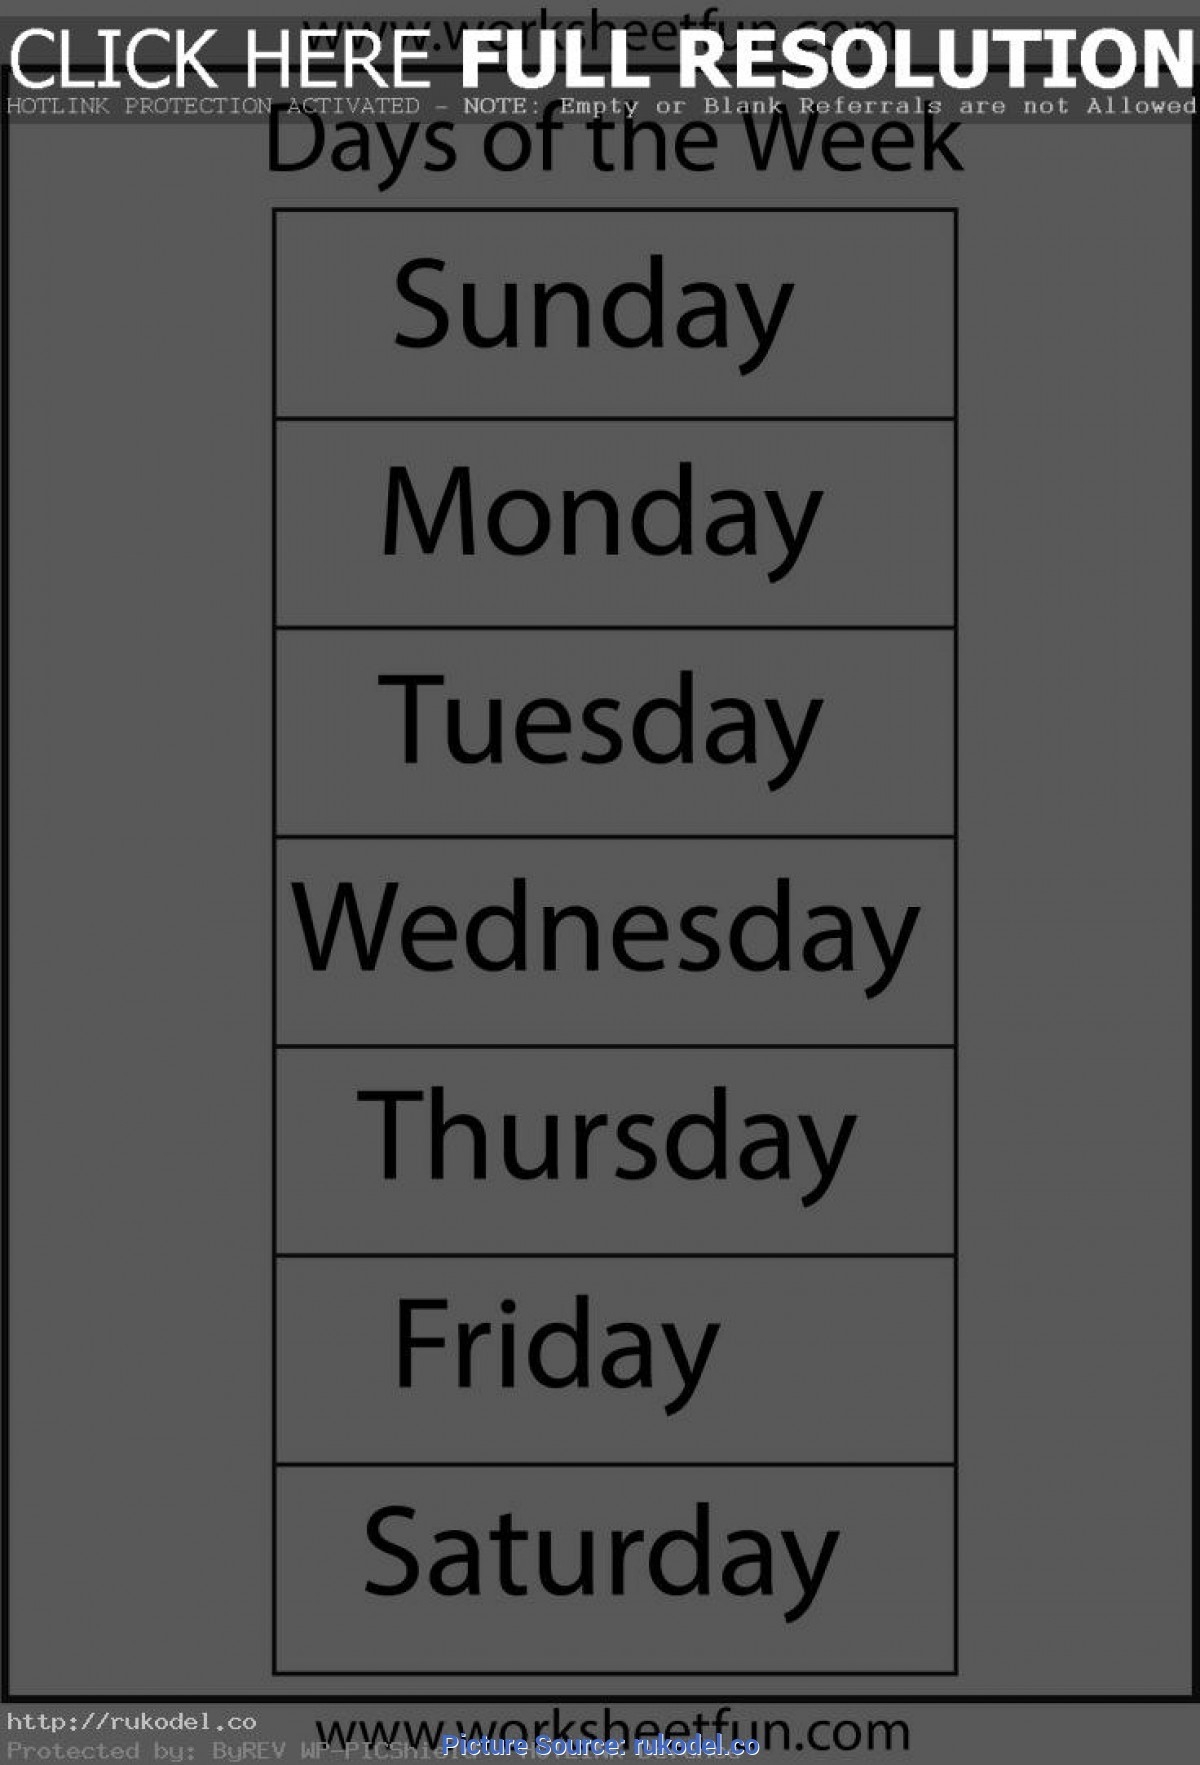 Complex Days Of The Week Lesson Plan For Preschool Classroom-Blank Preschool Class Calendar